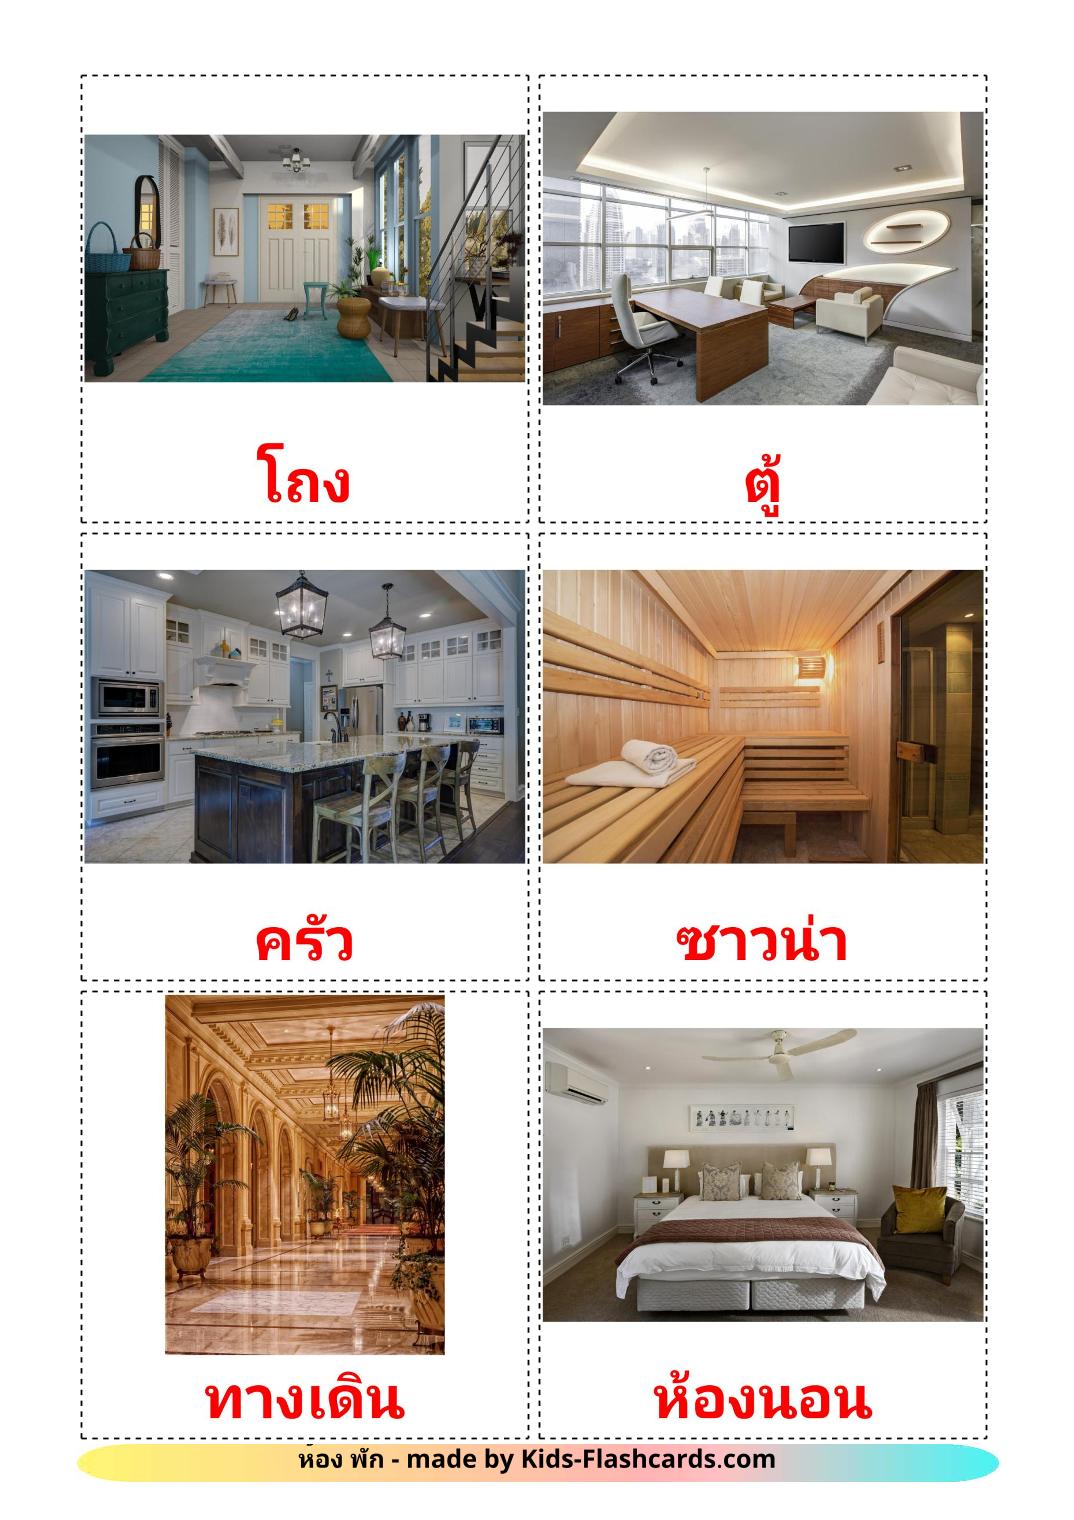 Salle - 17 Flashcards thaïlandais imprimables gratuitement